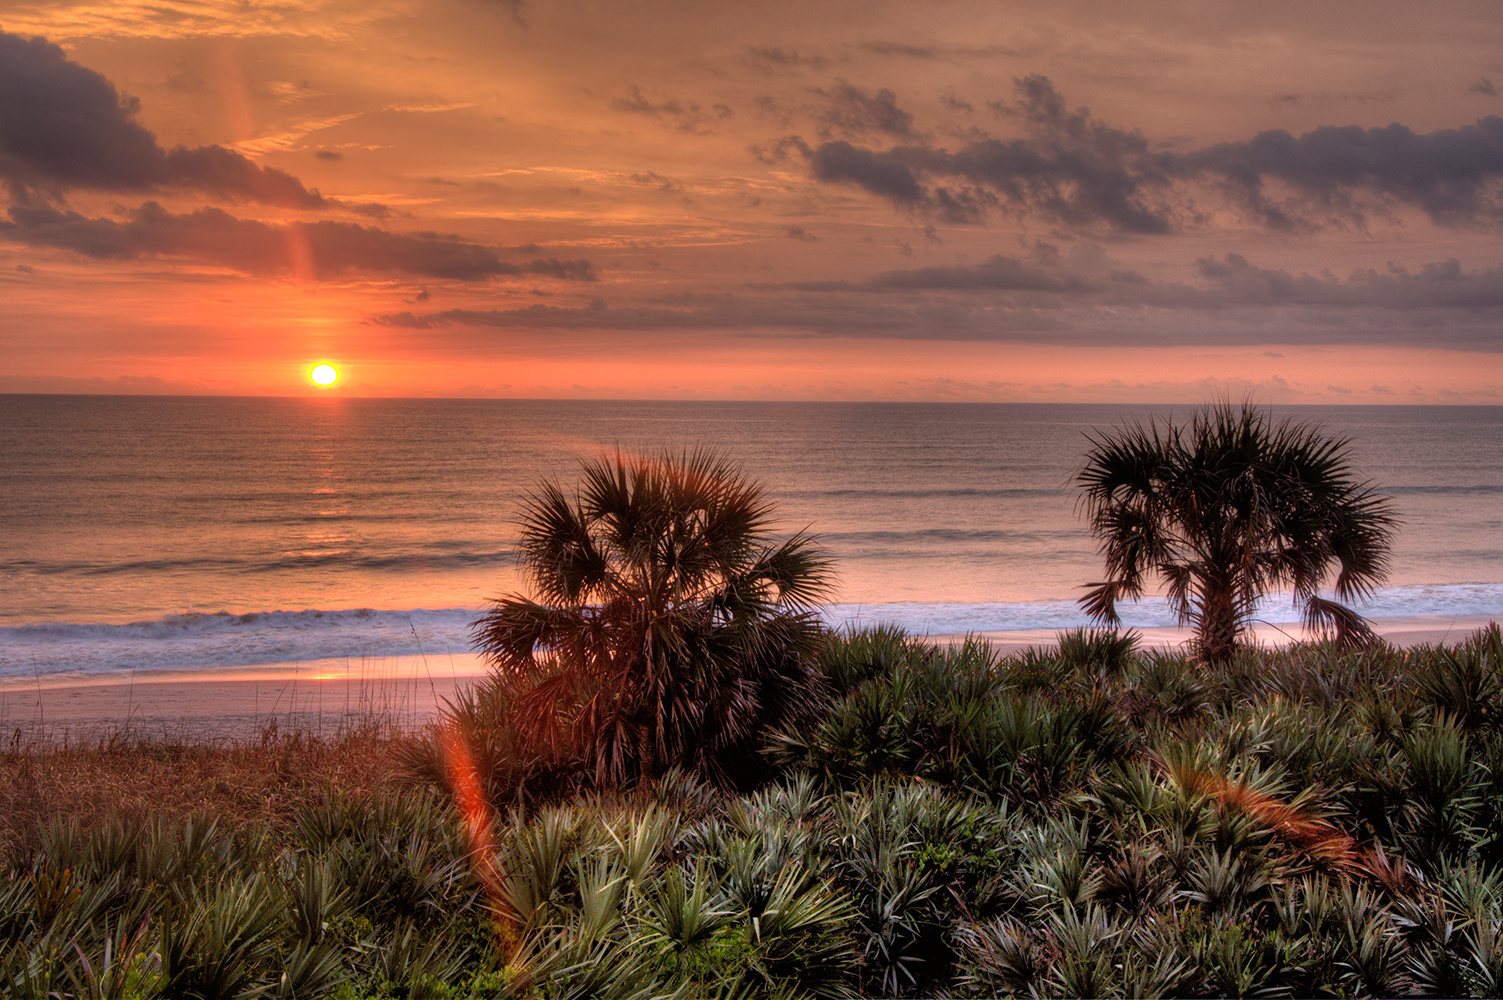 Sunrise in Indialantic Florida